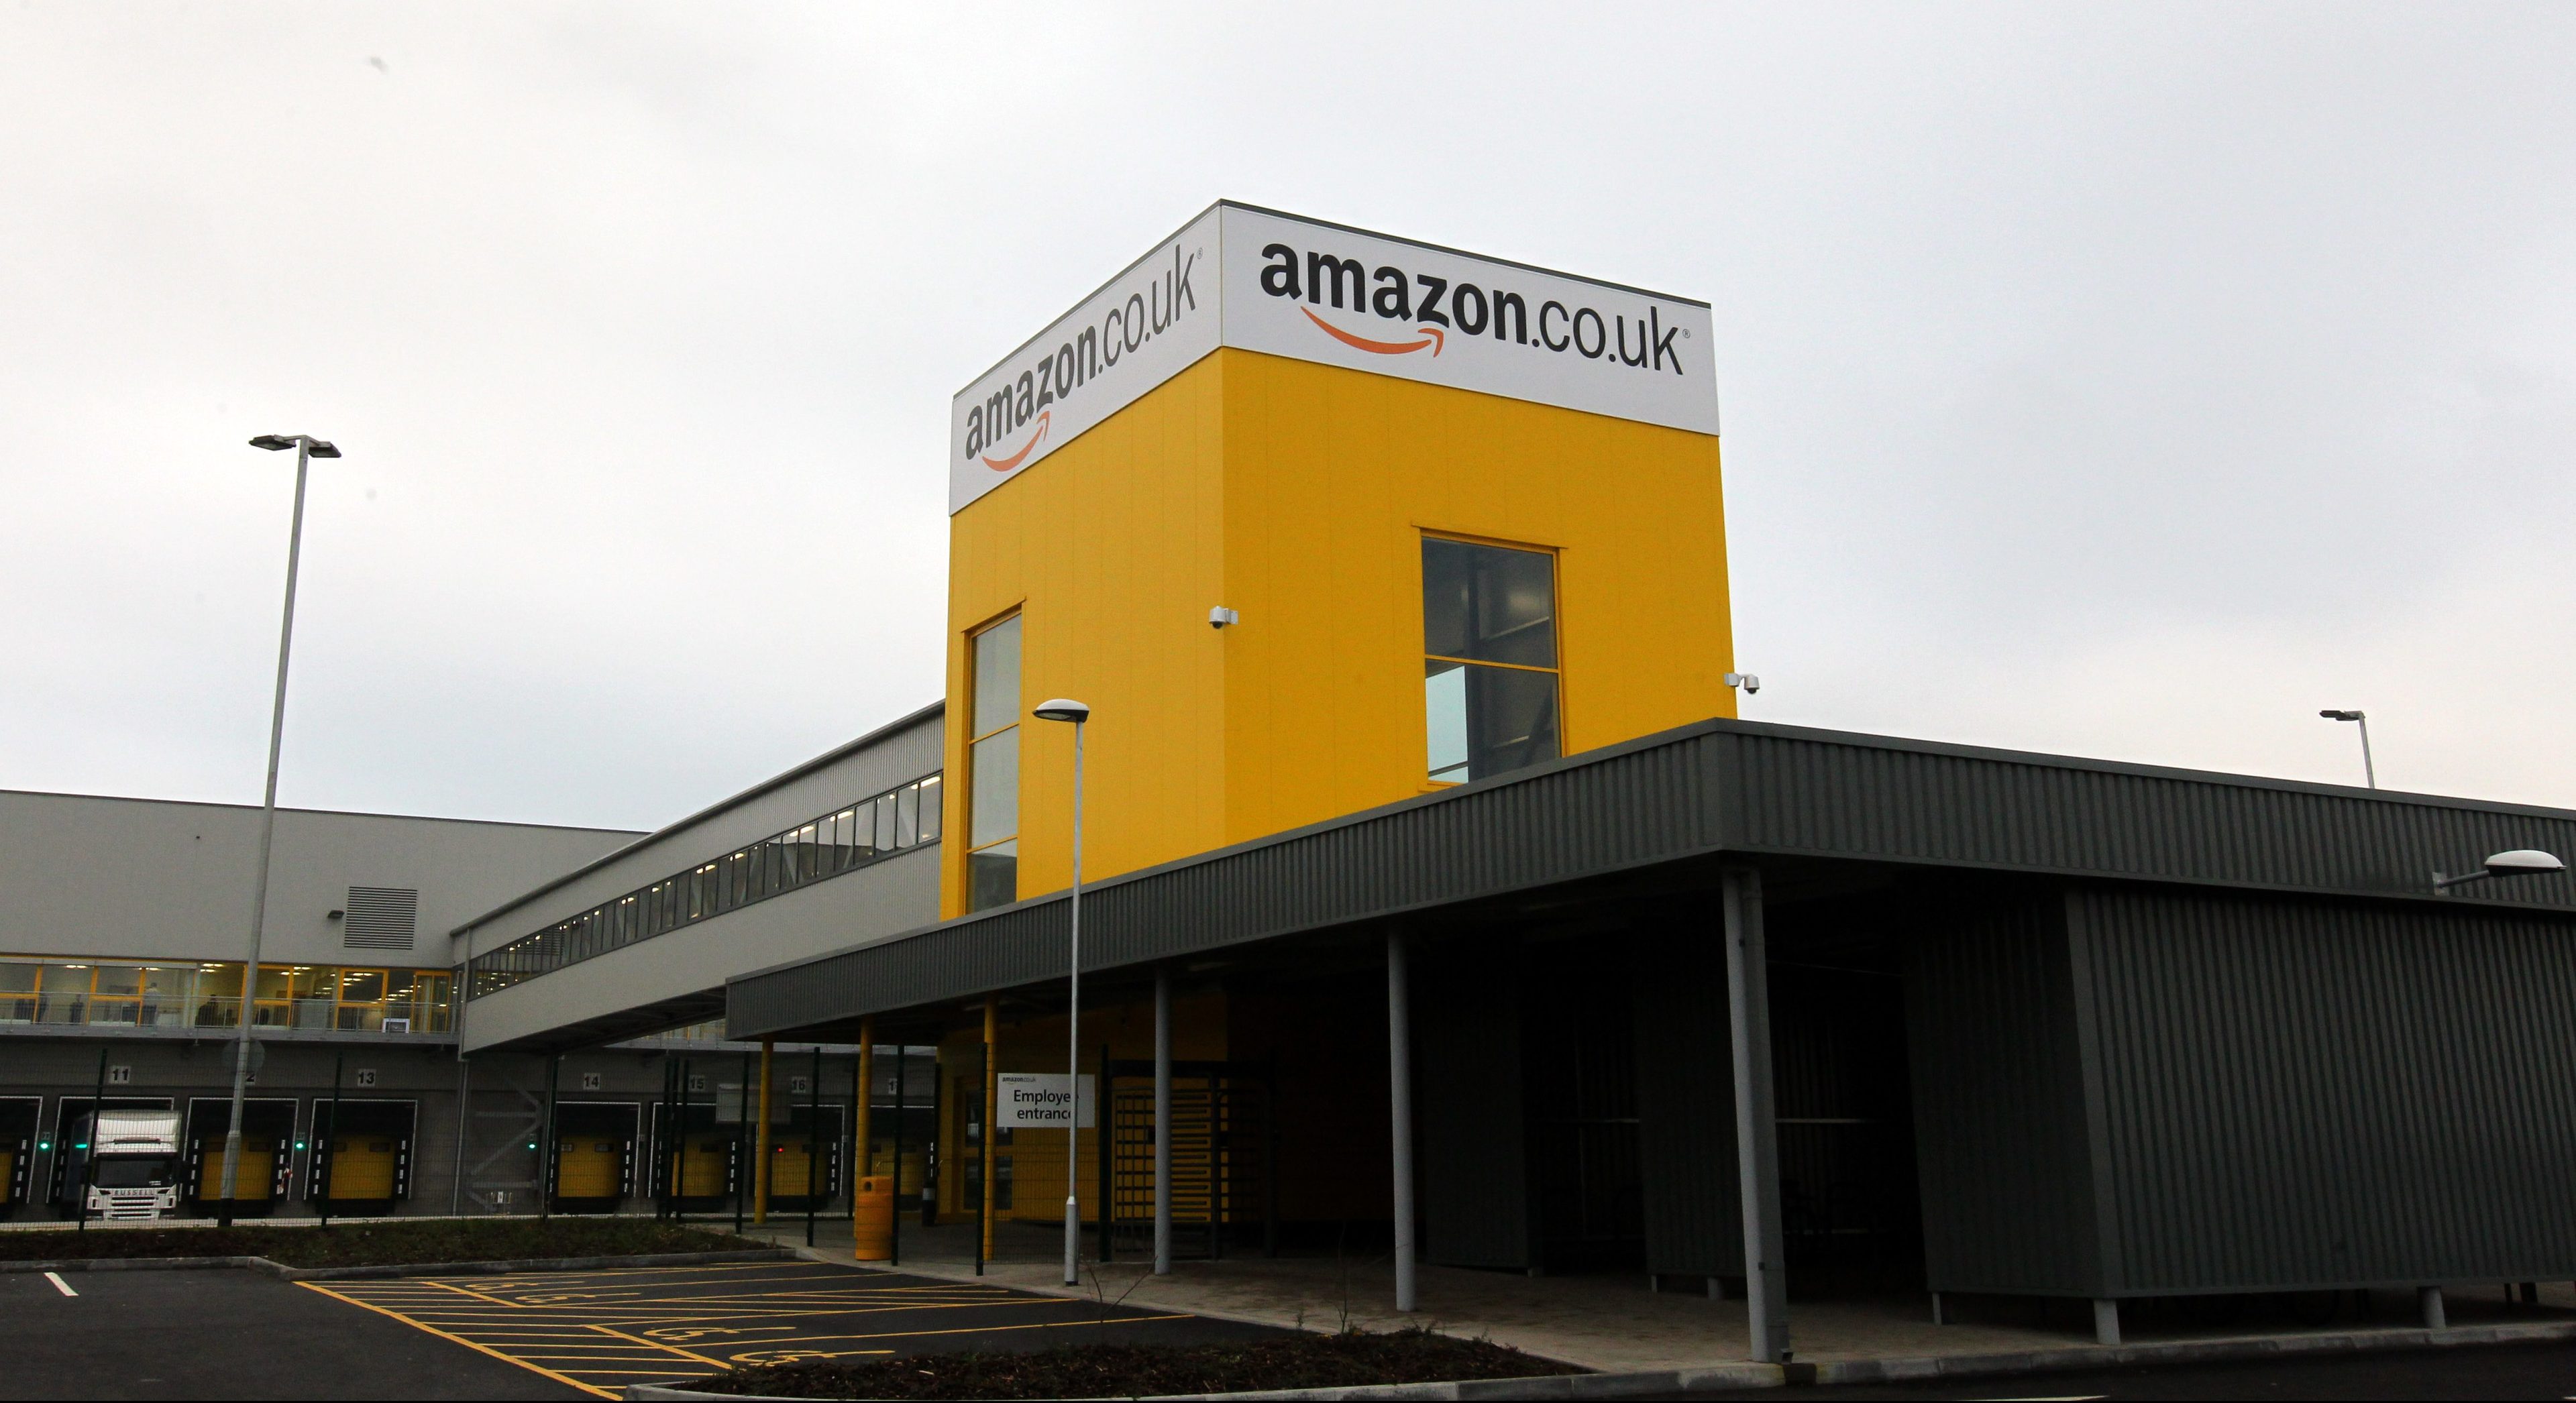 Amazon's fulfilment centre in Dunfermline.